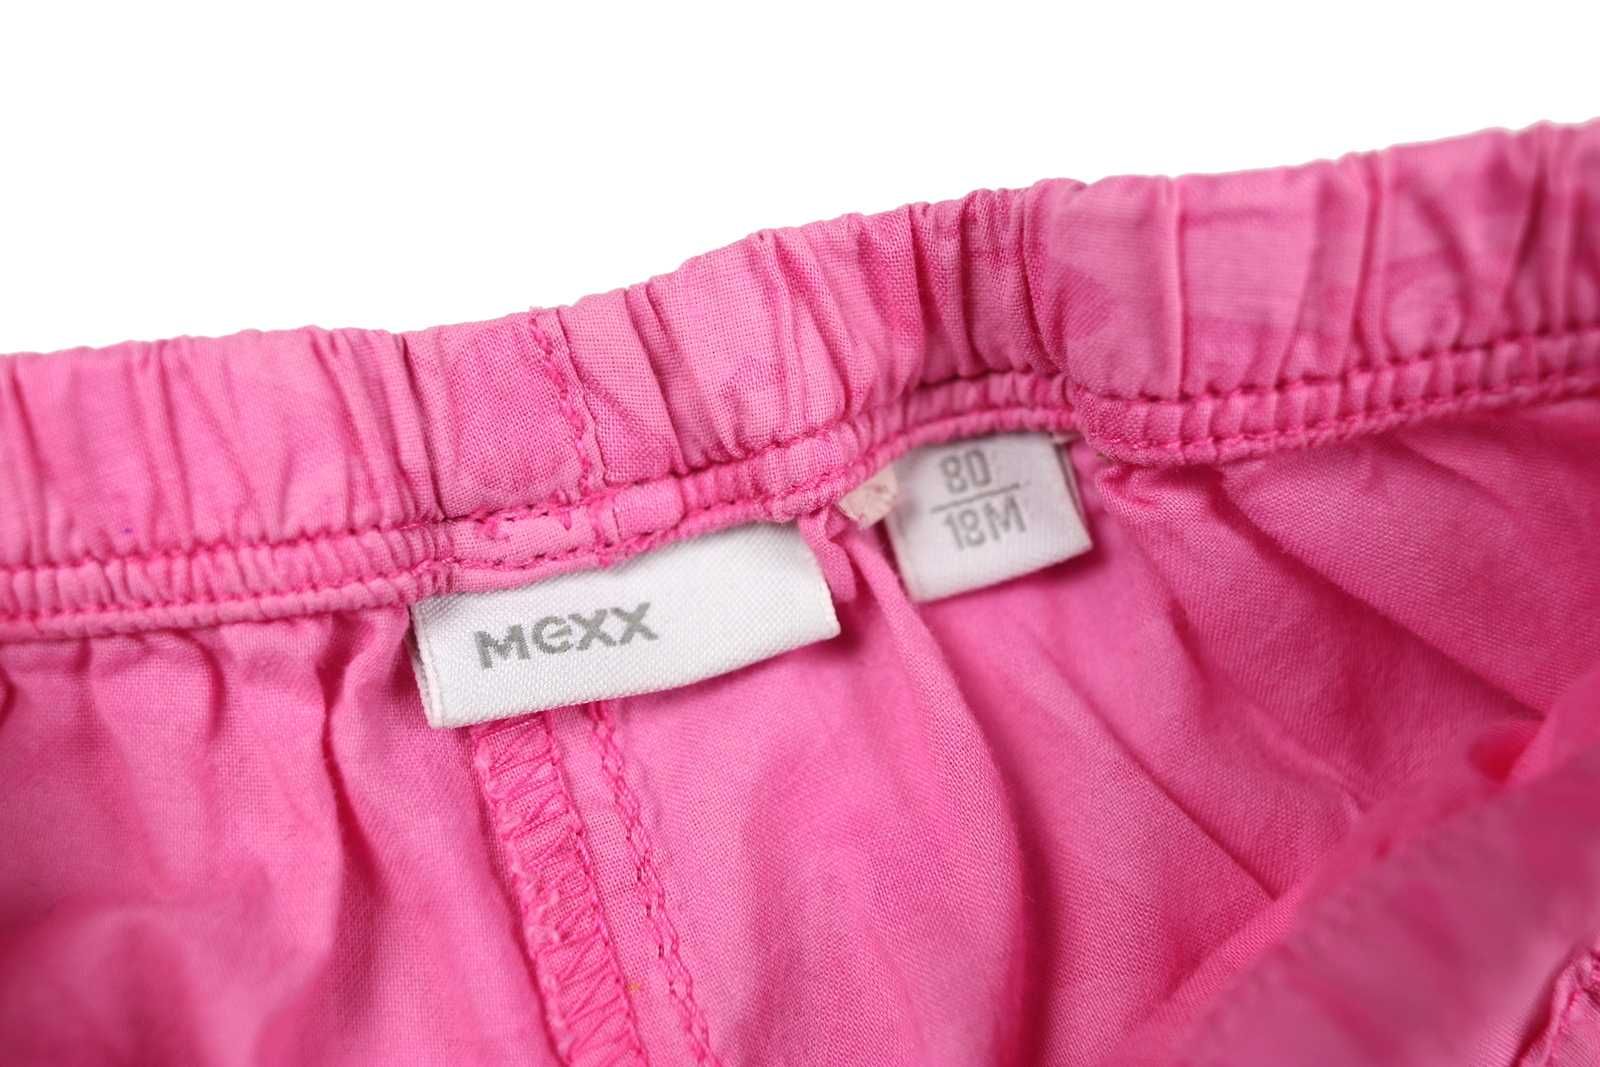 Mexx krótkie różowe spodenki batystowe z haftem 80